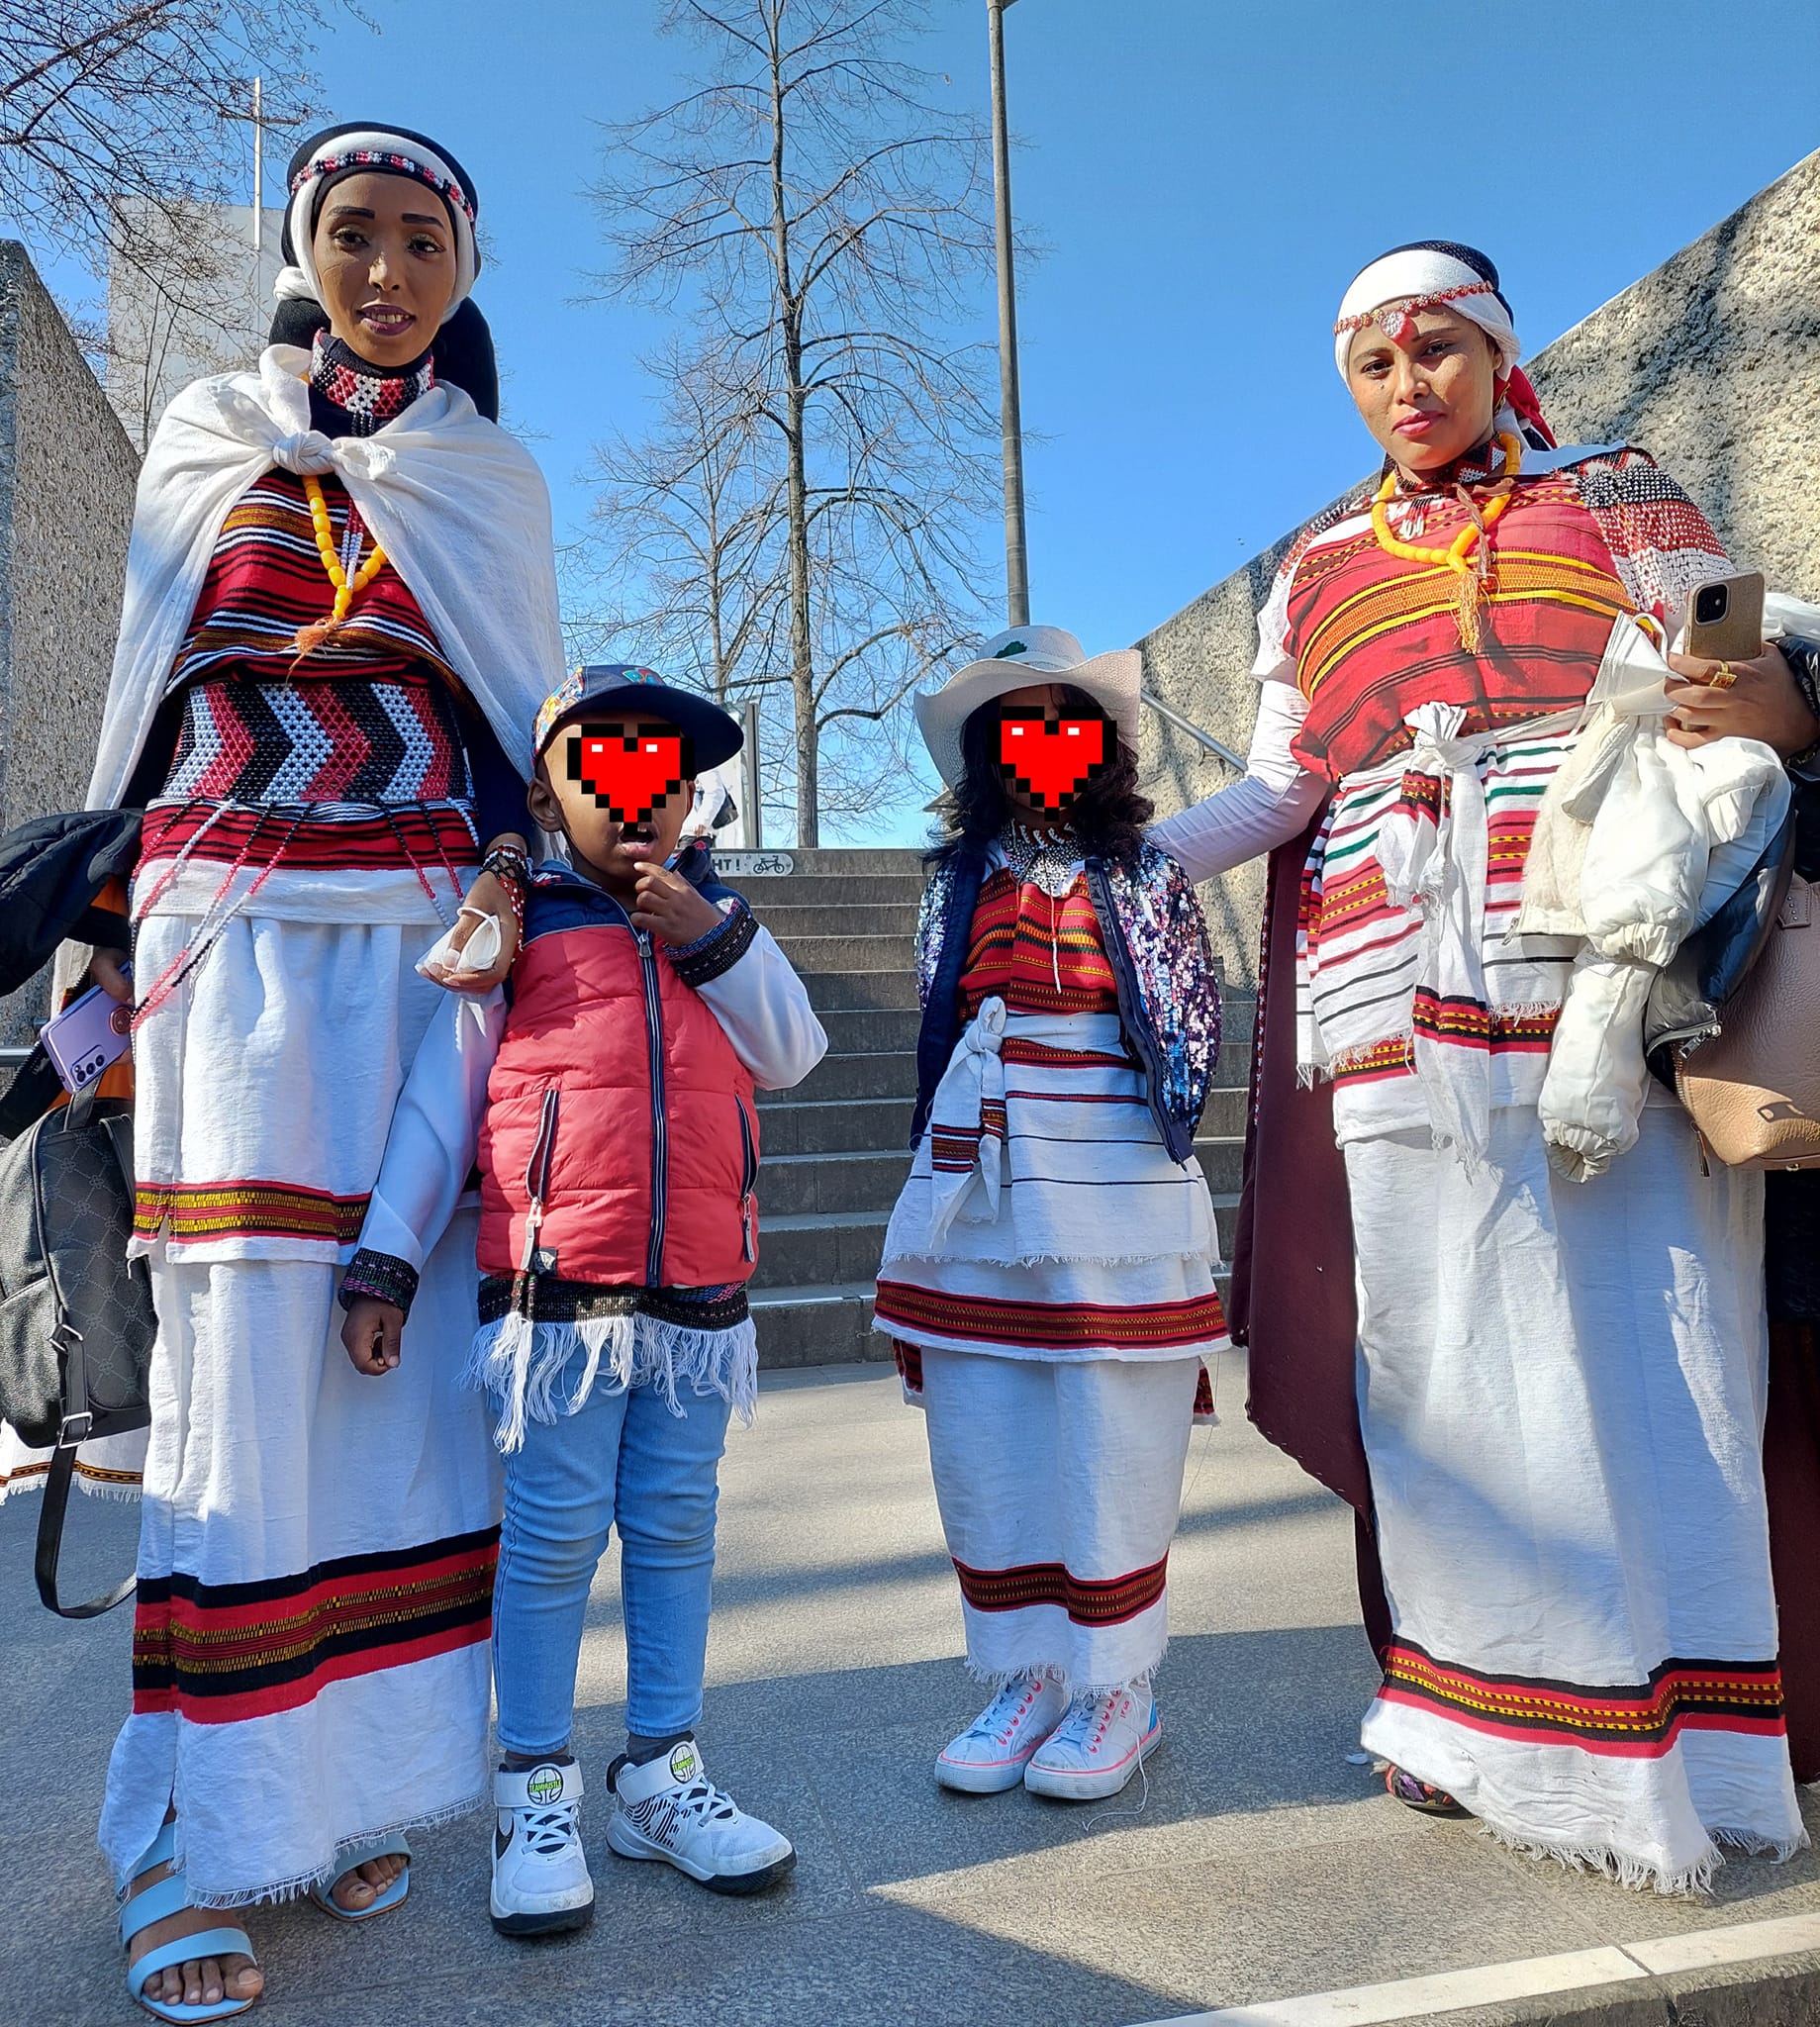 Women's-costume-Oromo-people-Ethiopia-introduced-in-Nuremberg-2022.jpg